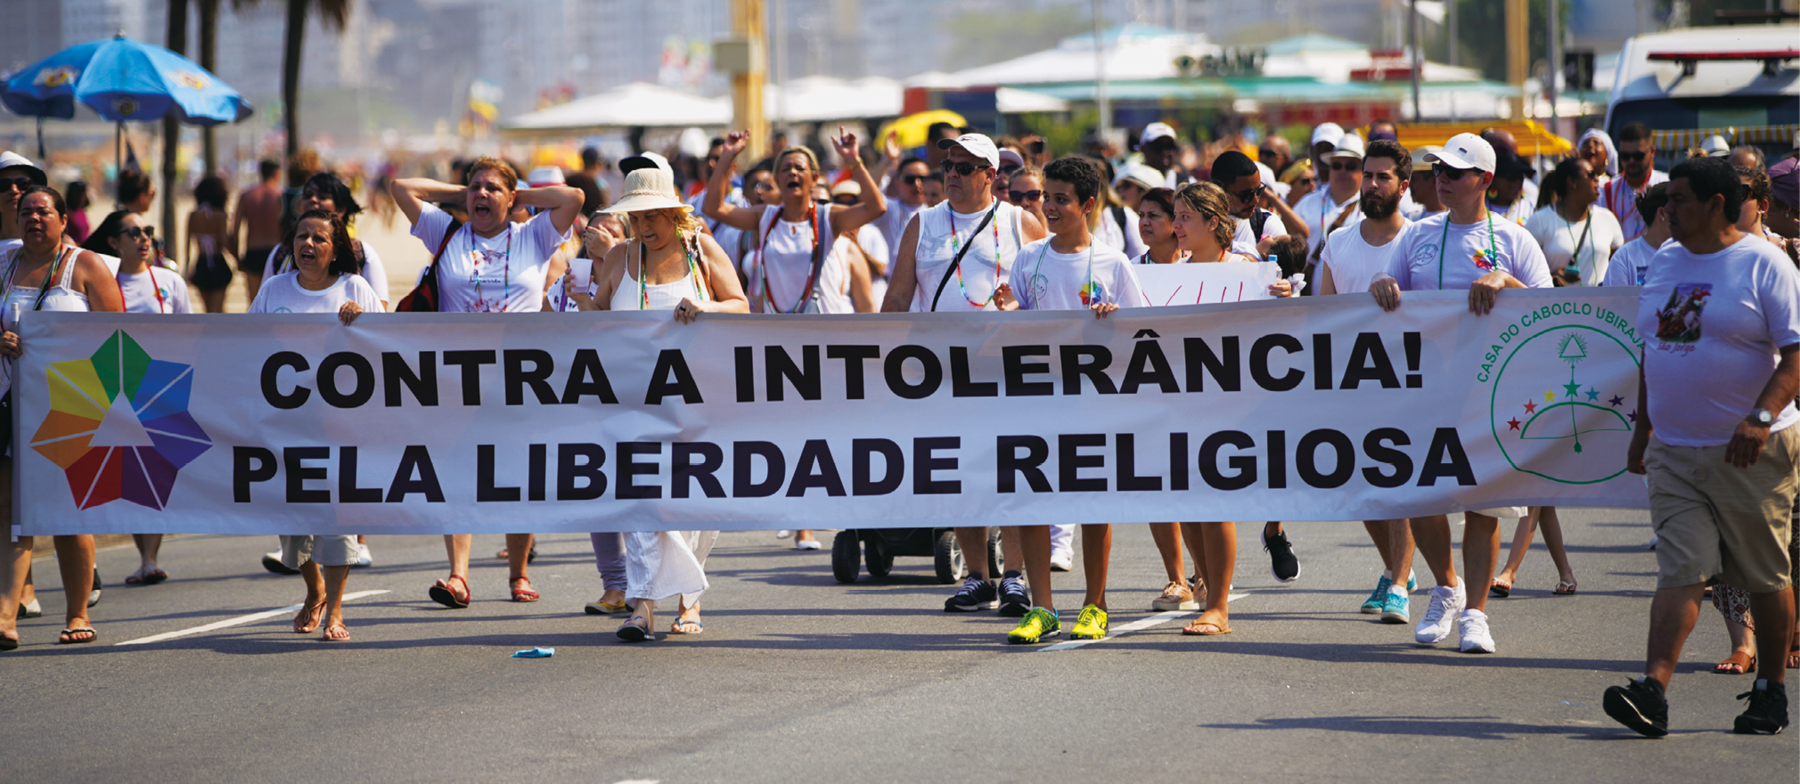 Fotografia. Pessoas em uma caminhada na rua. Elas estão vestidas de branco e carregam uma grande faixa escrito: CONTRA A INTOLERÂNCIA! PELA LIBERDADE RELIGIOSA.